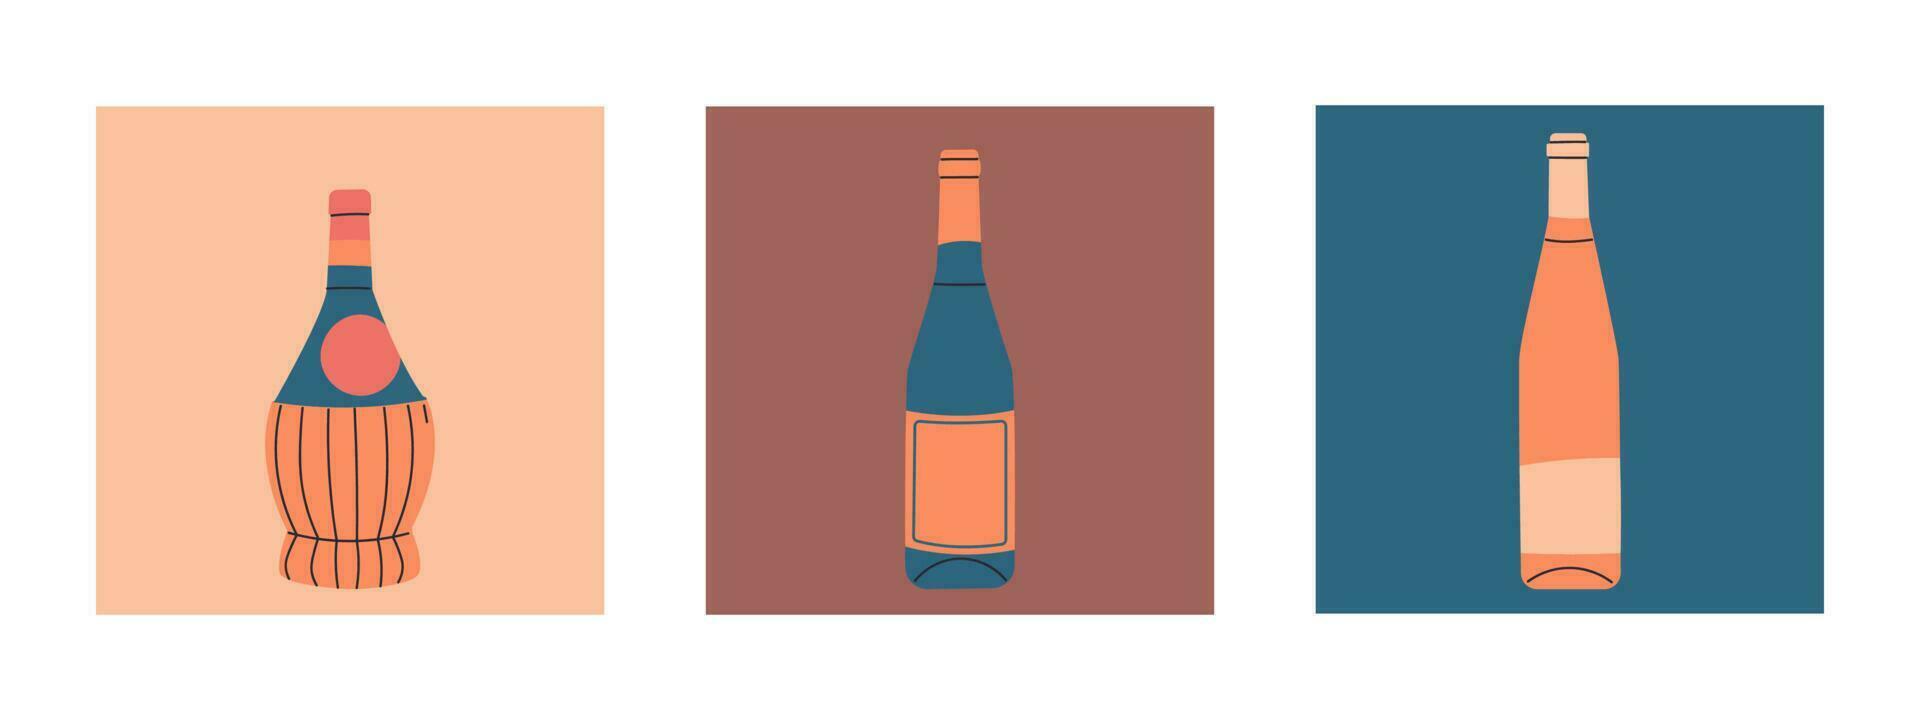 impostato di vettore piatto bottiglie di vino. etichette senza iscrizioni. illustrazione per bar o ristorante menù design.